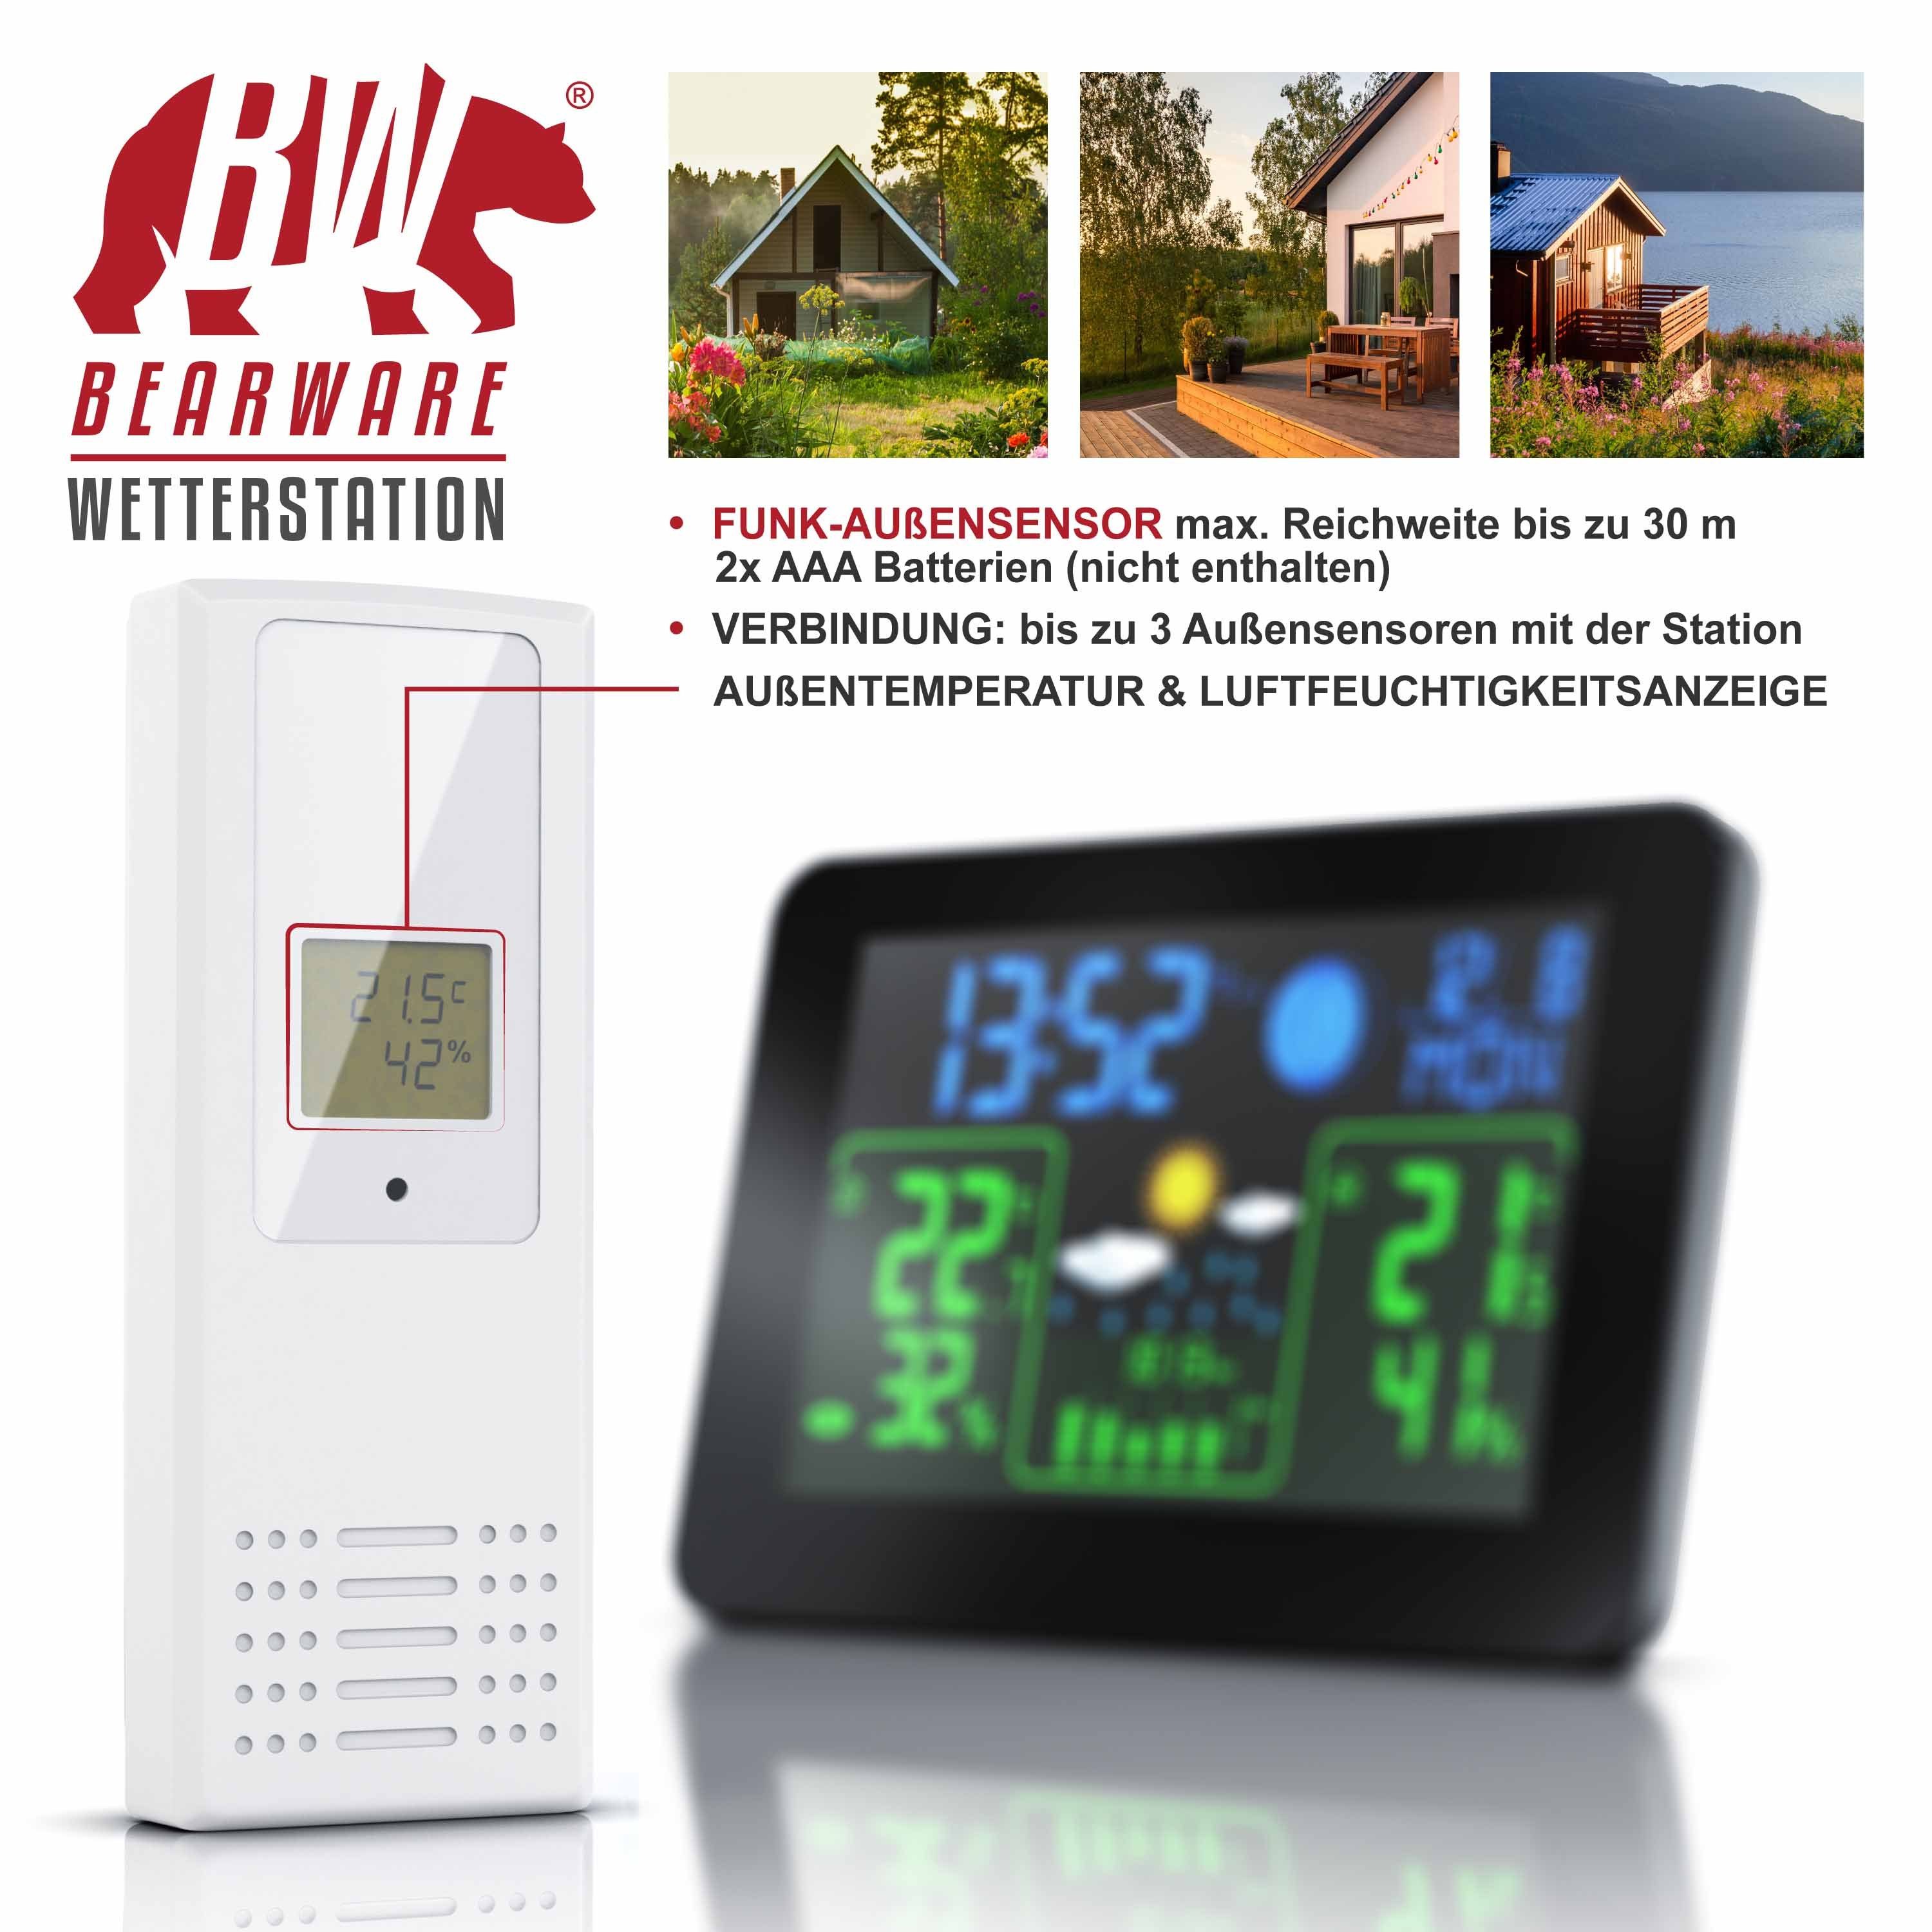 BEARWARE Wetterstation (mit Außensensor, Farb & Funk Wettervorhersage Barometer, uvm) Display mit Außensensor